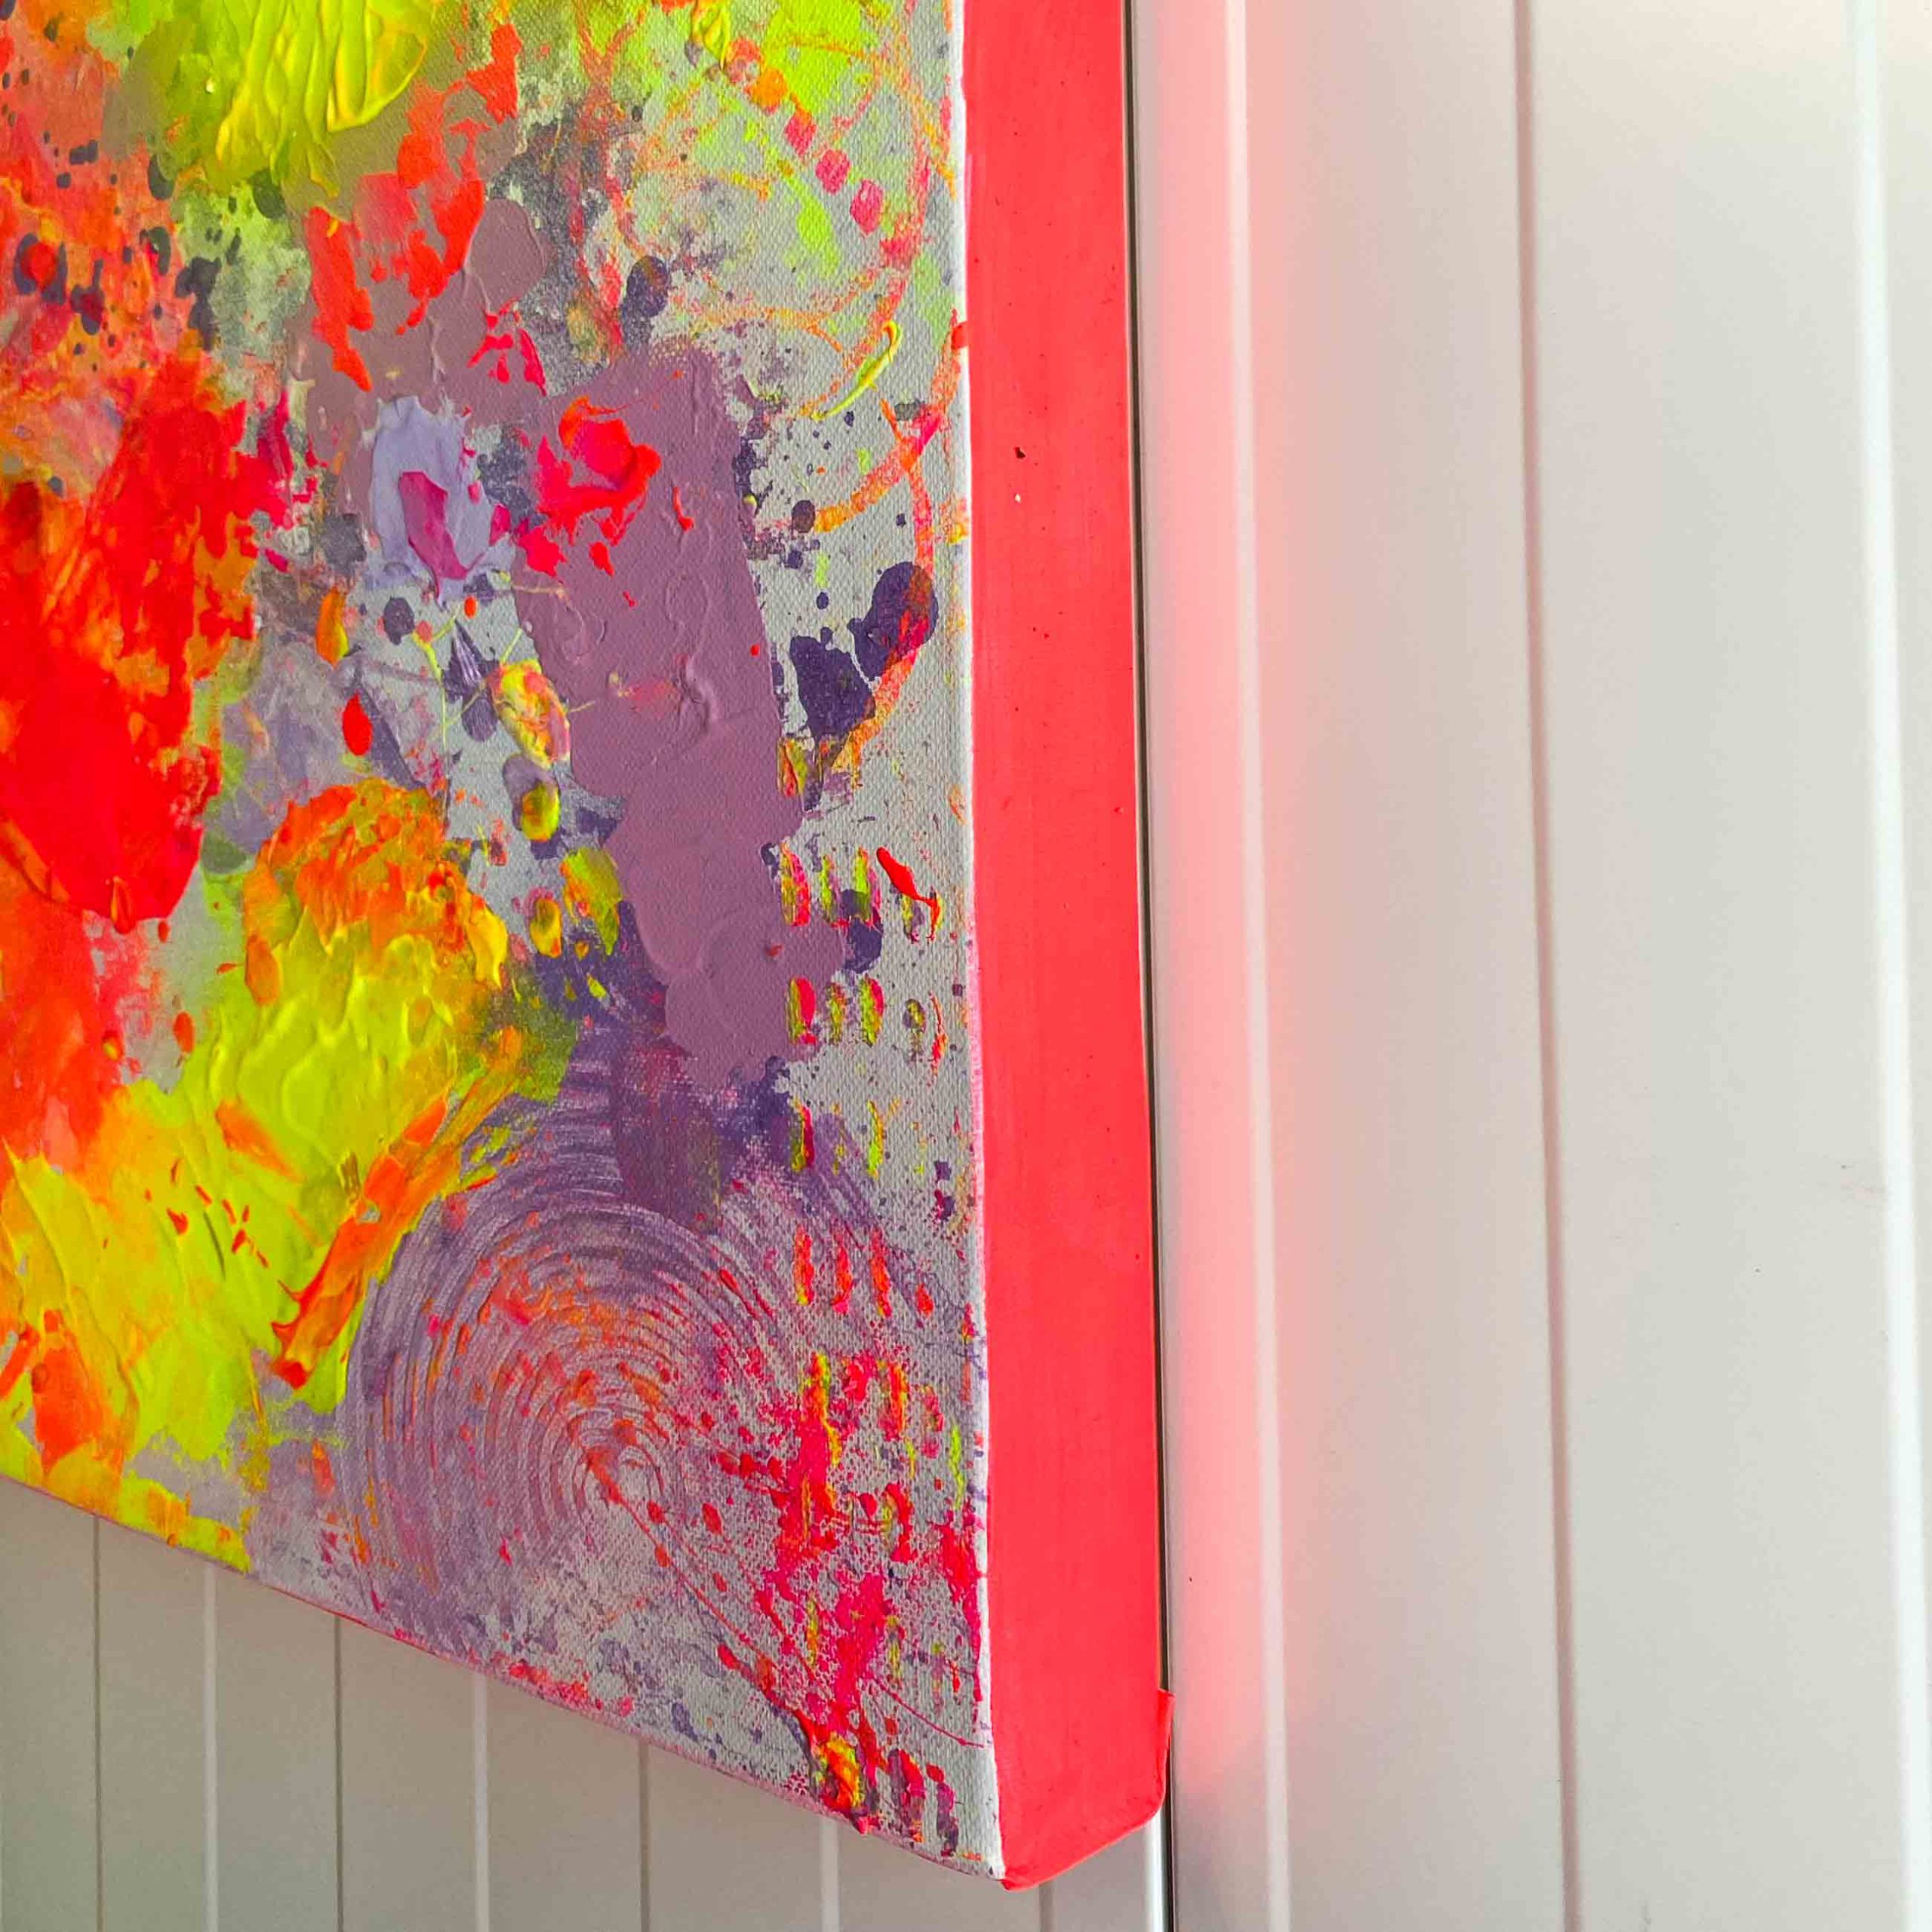 Detailansicht Rand: Abstraktes Leinwandbild ON THE DANCEFLOOR von Sophie Friederichs. Farbwelt: Neongelb, Neonpink, Lila und Orange